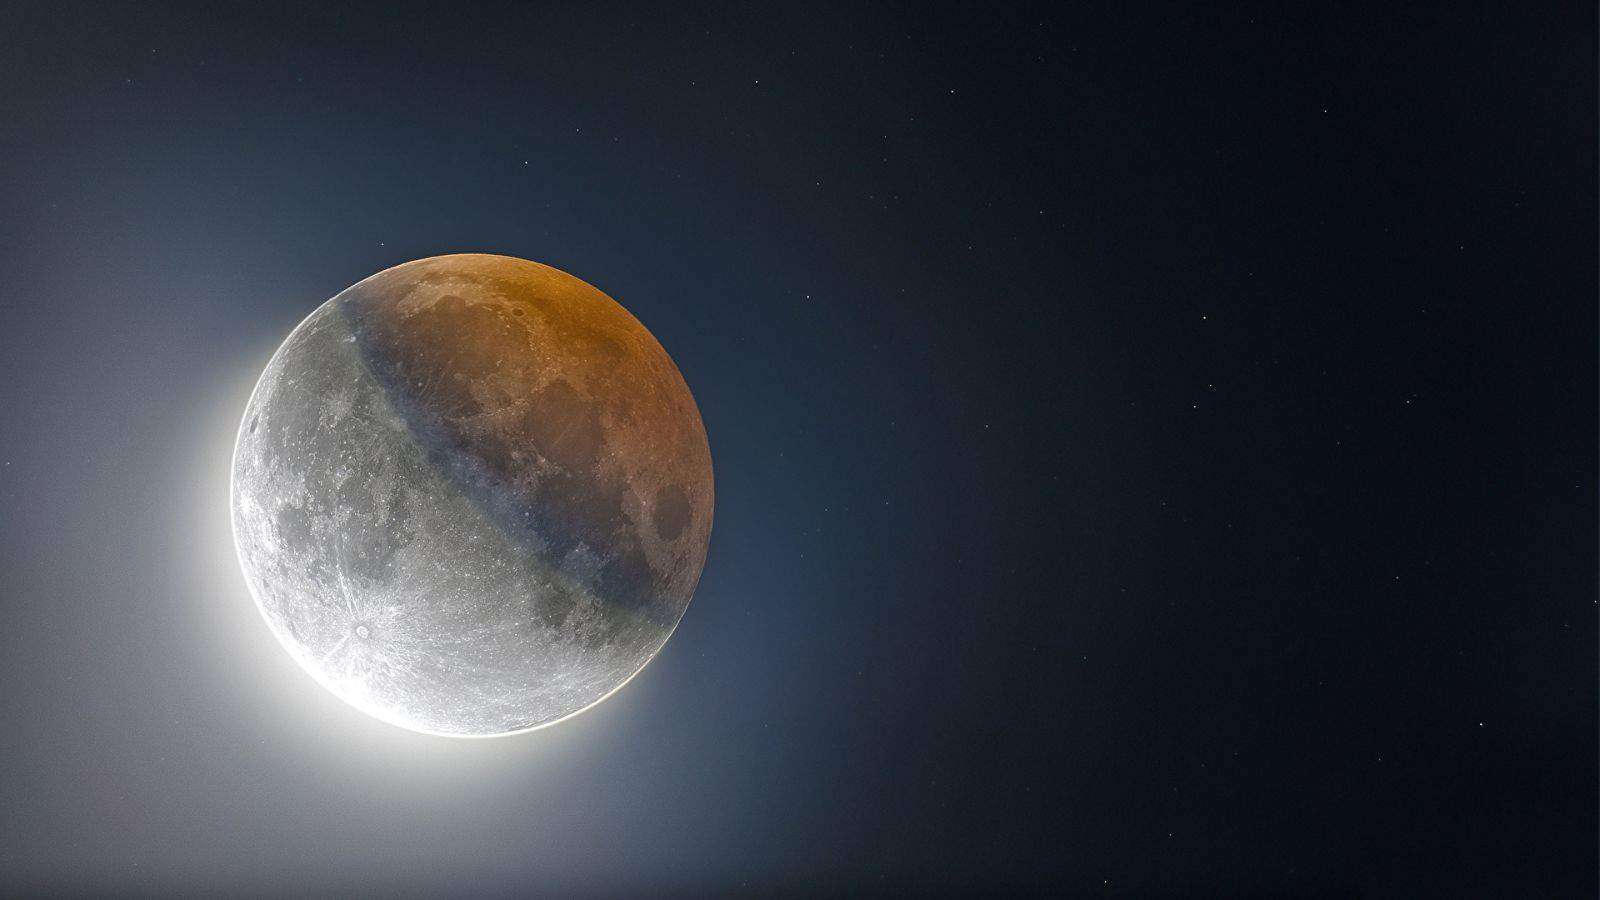 Scienziati ritrovano una luna fantasma